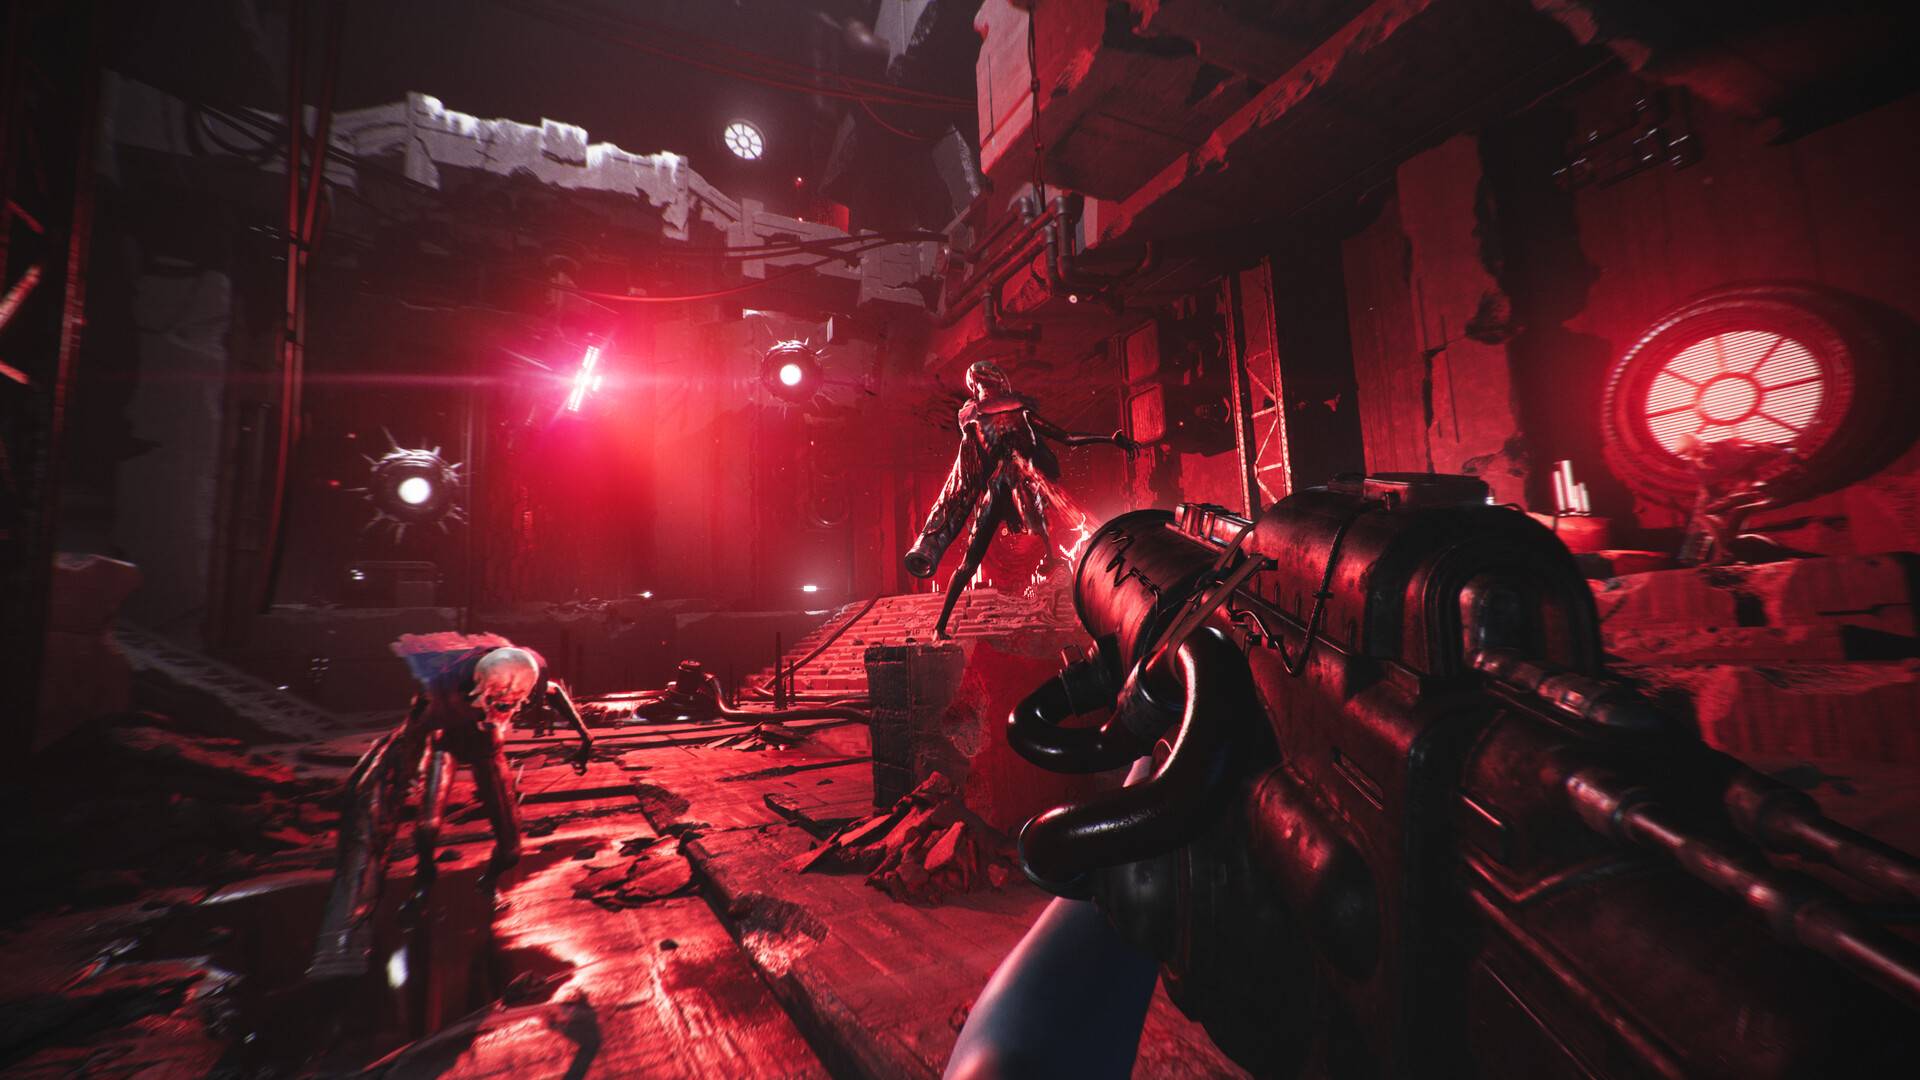 Un personaje de un videojuego dispara monstruos en una habitación metálica, con luces rojas parpadeando detrás de ellos.